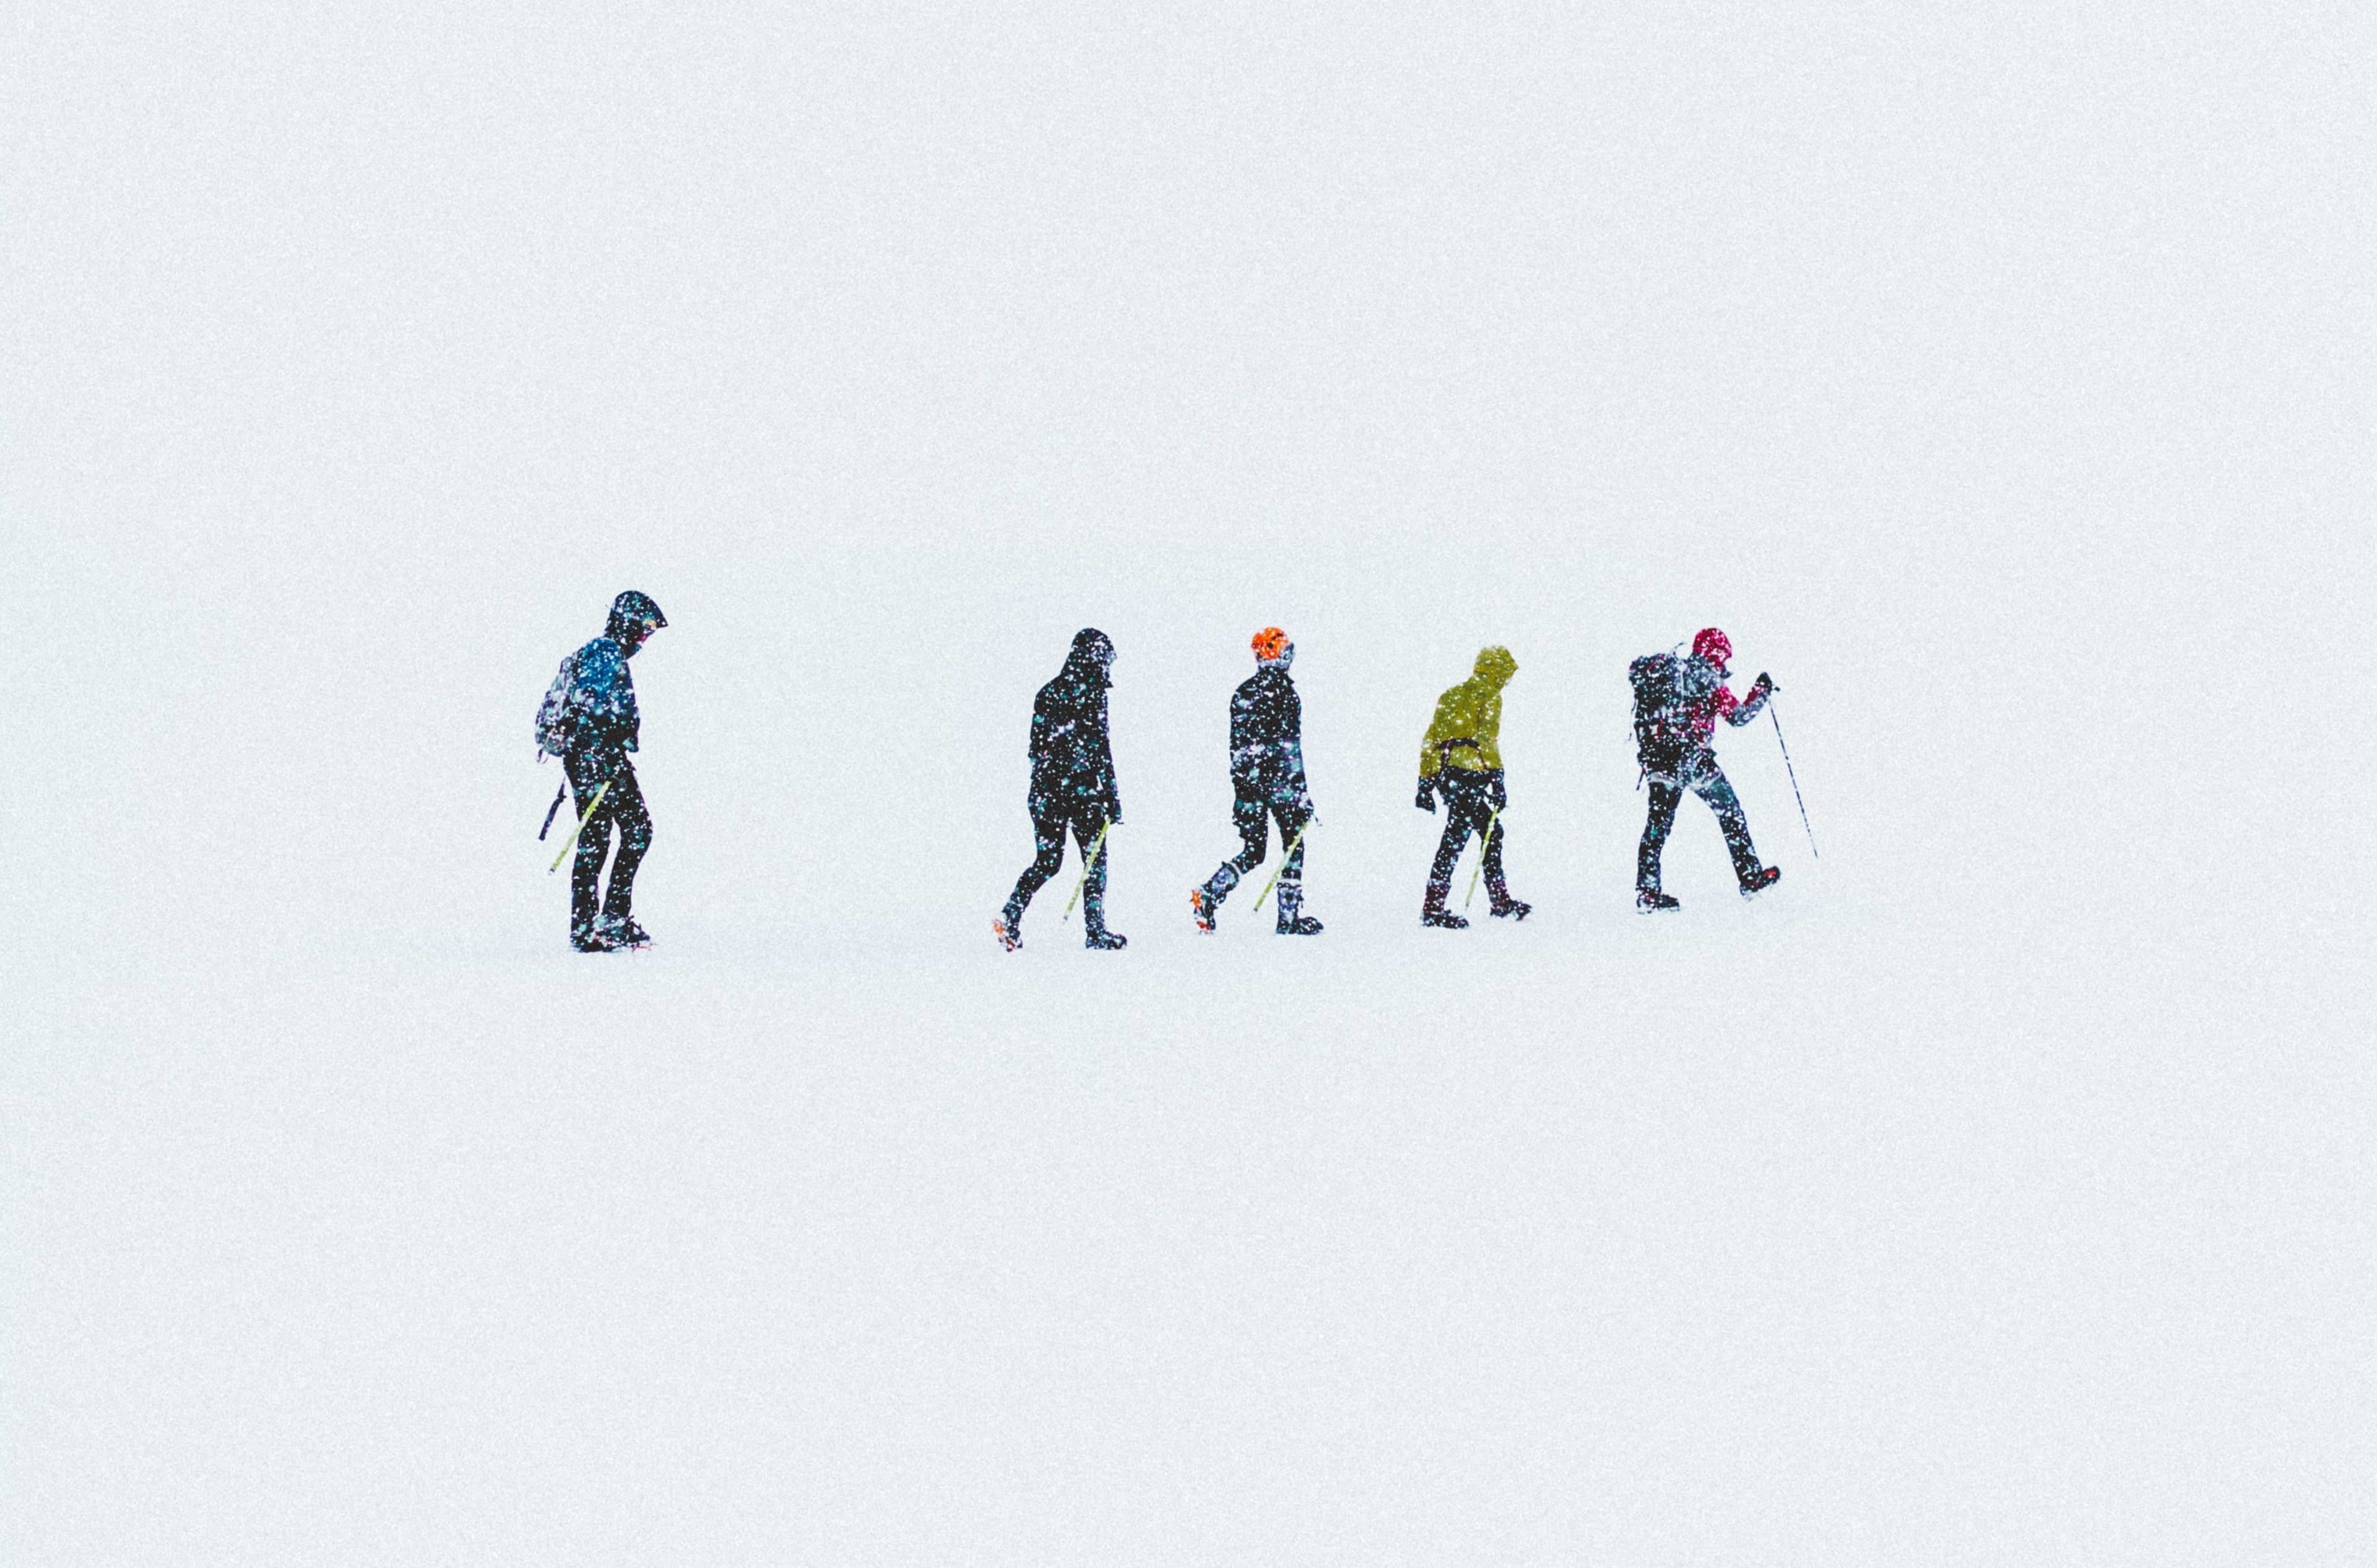 Solheimajokull Glacier Hiking group